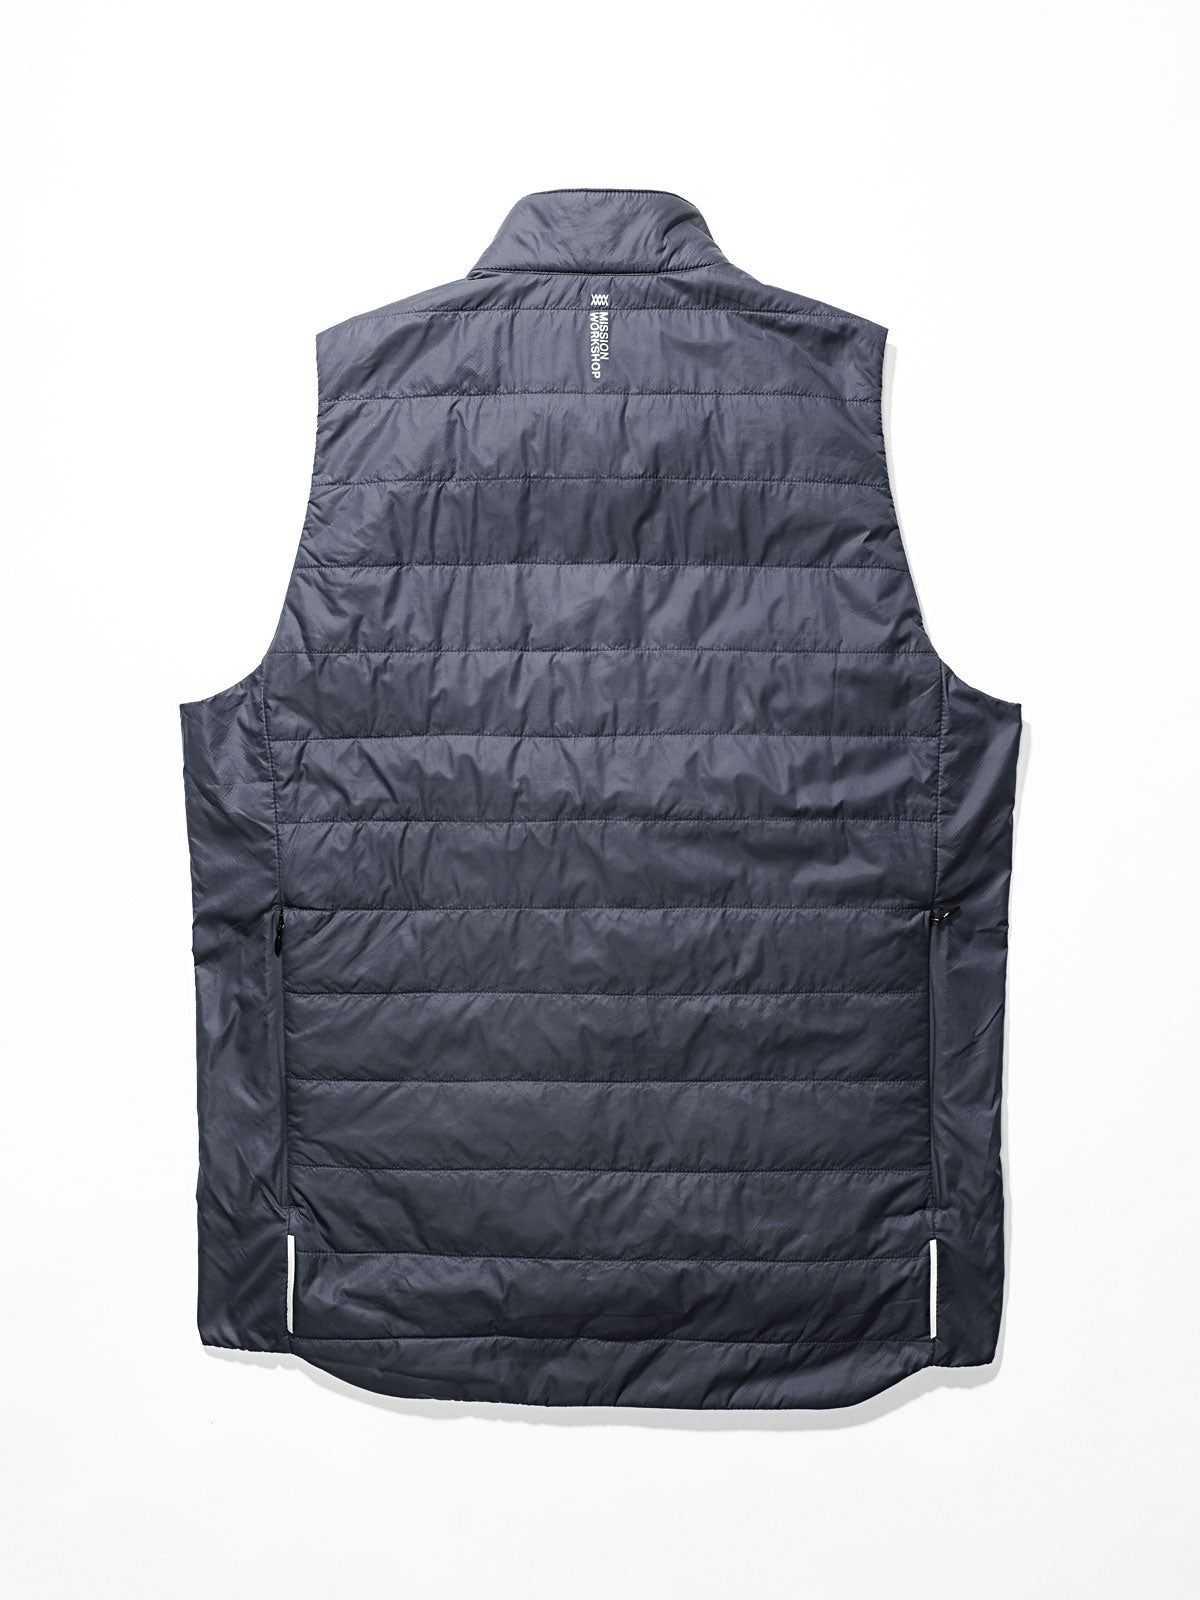 Acre Series Vest by Mission Workshop - Weatherproof Bags & Technical Apparel - San Francisco & Los Angeles - Construit pour durer - Garanti pour toujours